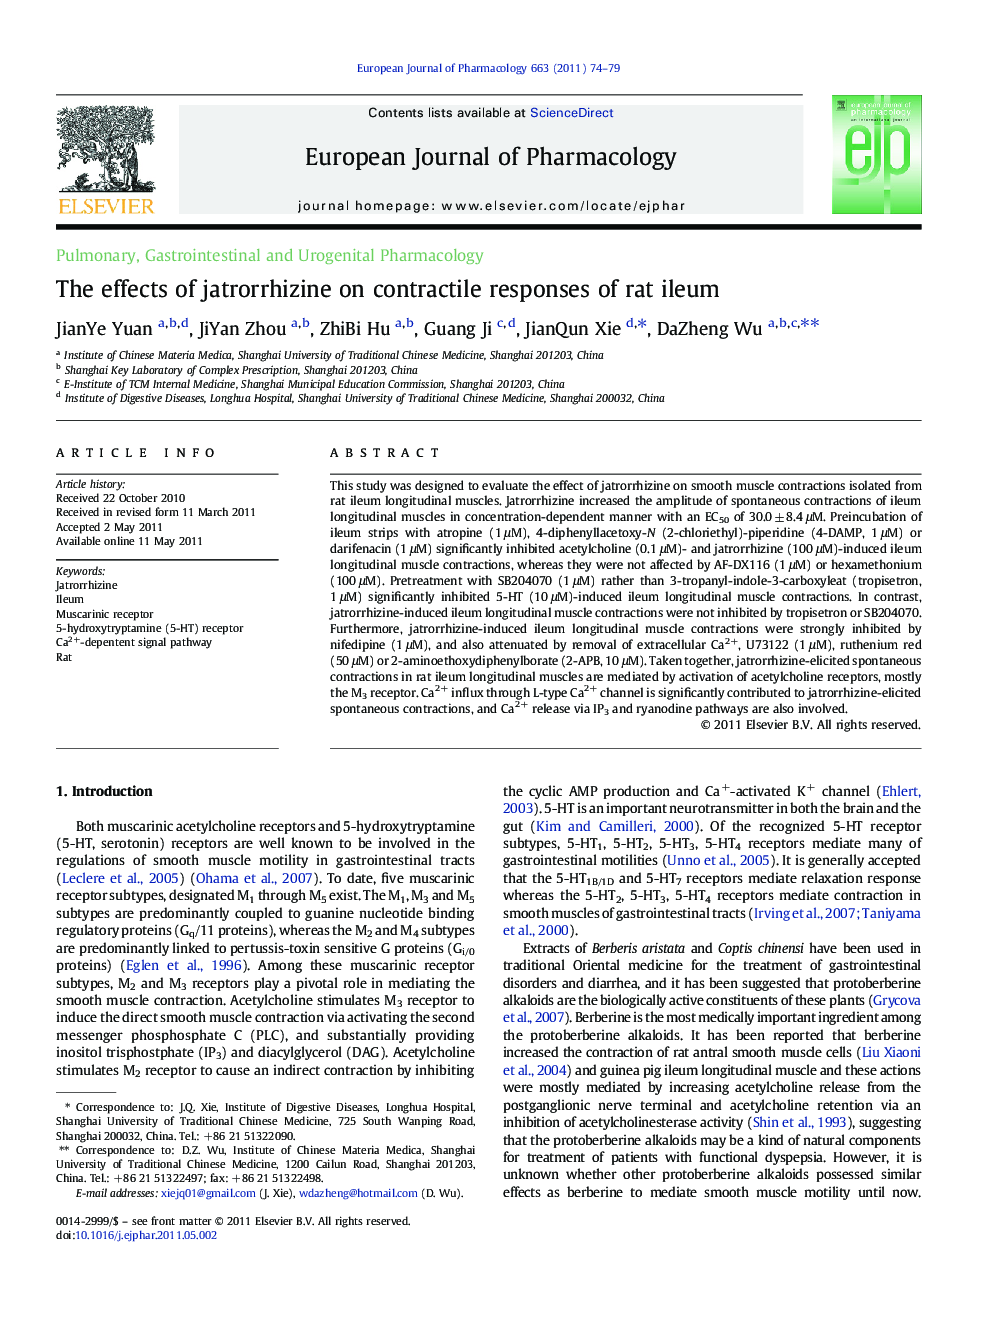 The effects of jatrorrhizine on contractile responses of rat ileum